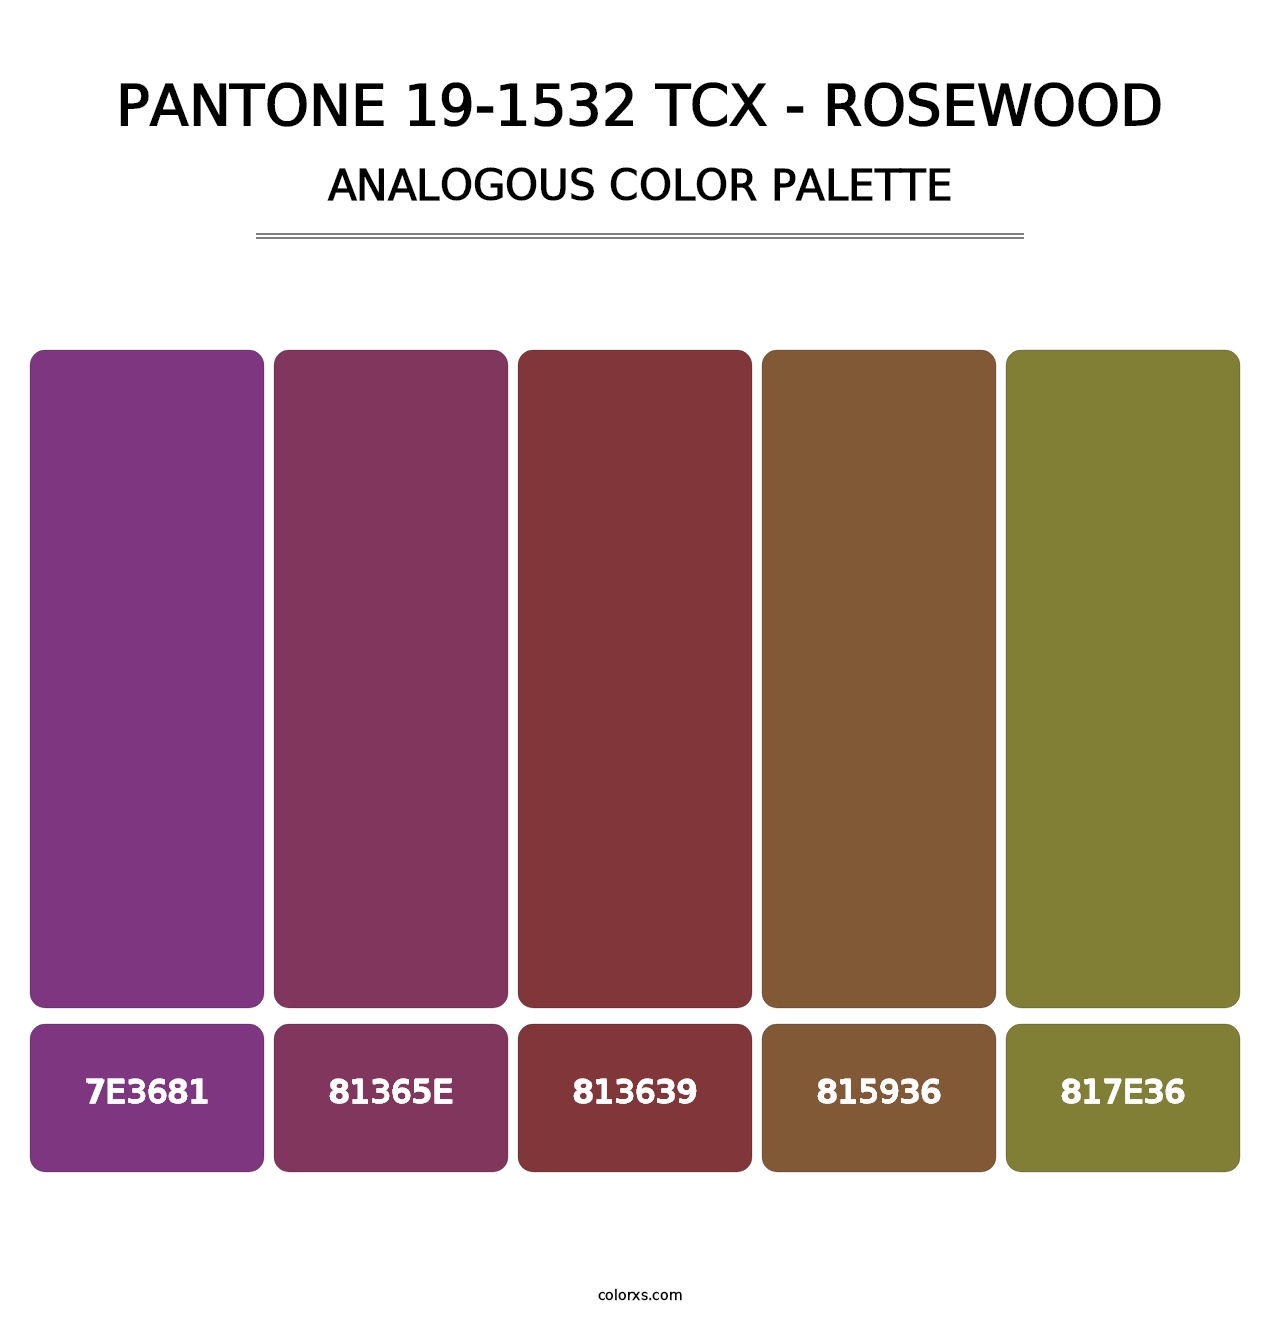 PANTONE 19-1532 TCX - Rosewood - Analogous Color Palette